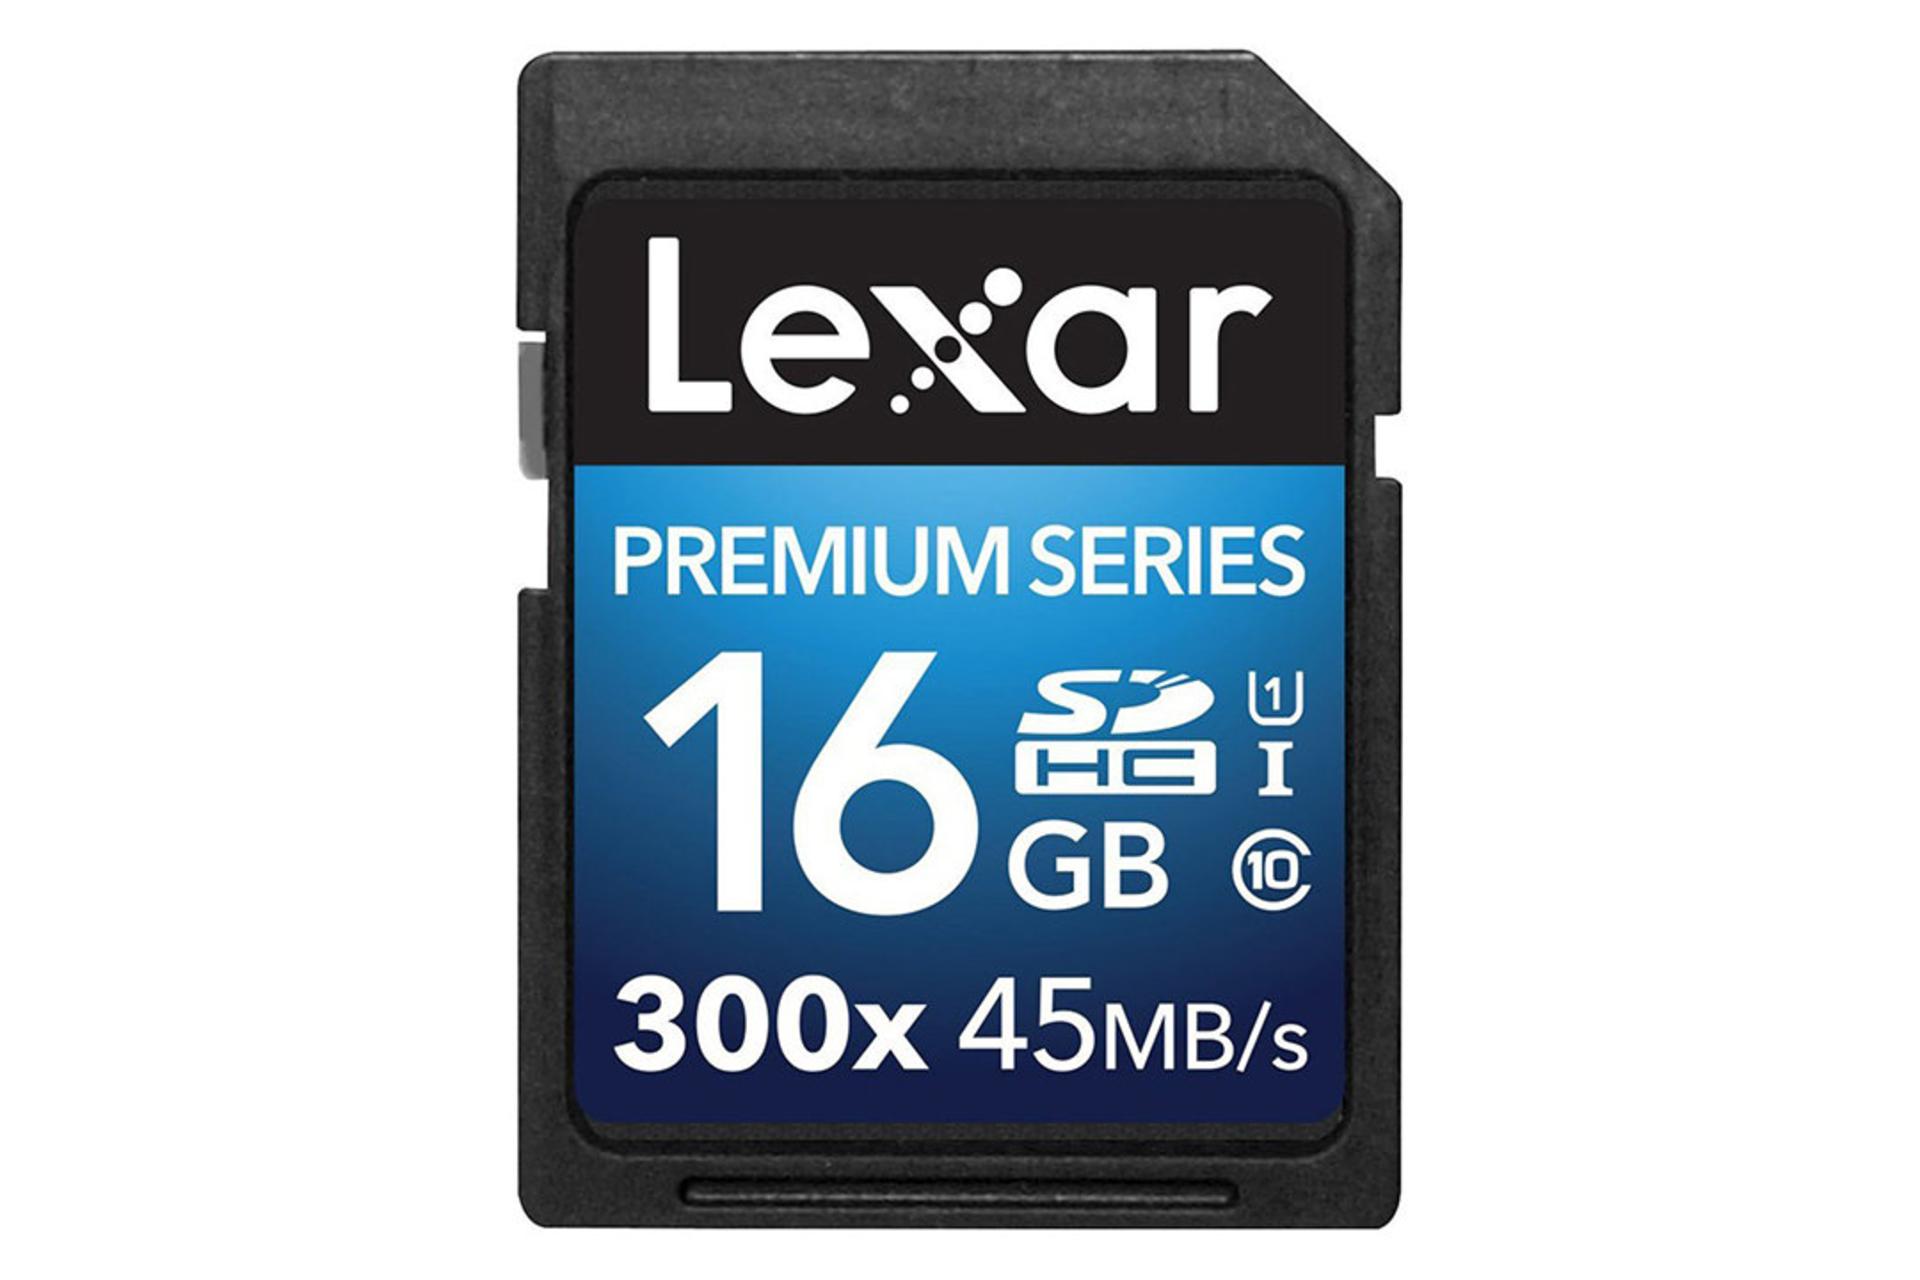 Lexar Premium SDHC Class 10 UHS-I U1 16GB